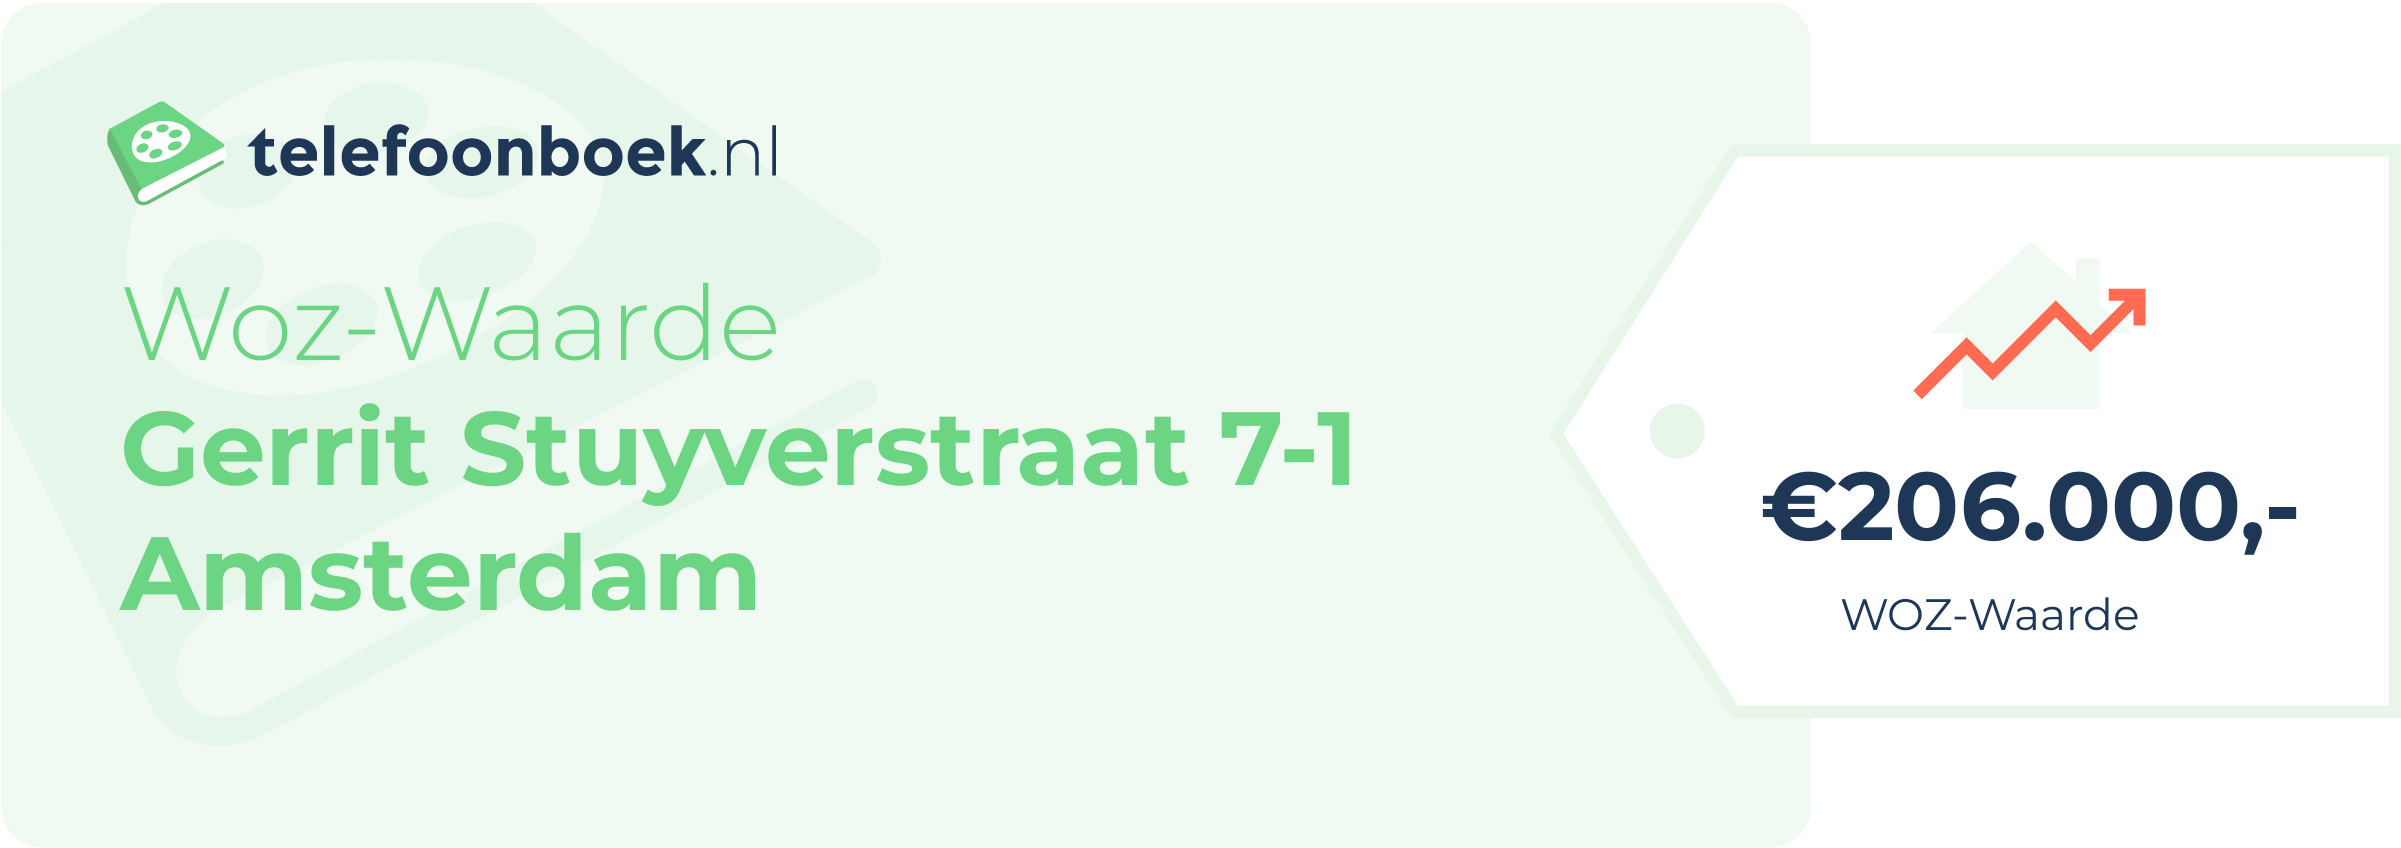 WOZ-waarde Gerrit Stuyverstraat 7-1 Amsterdam